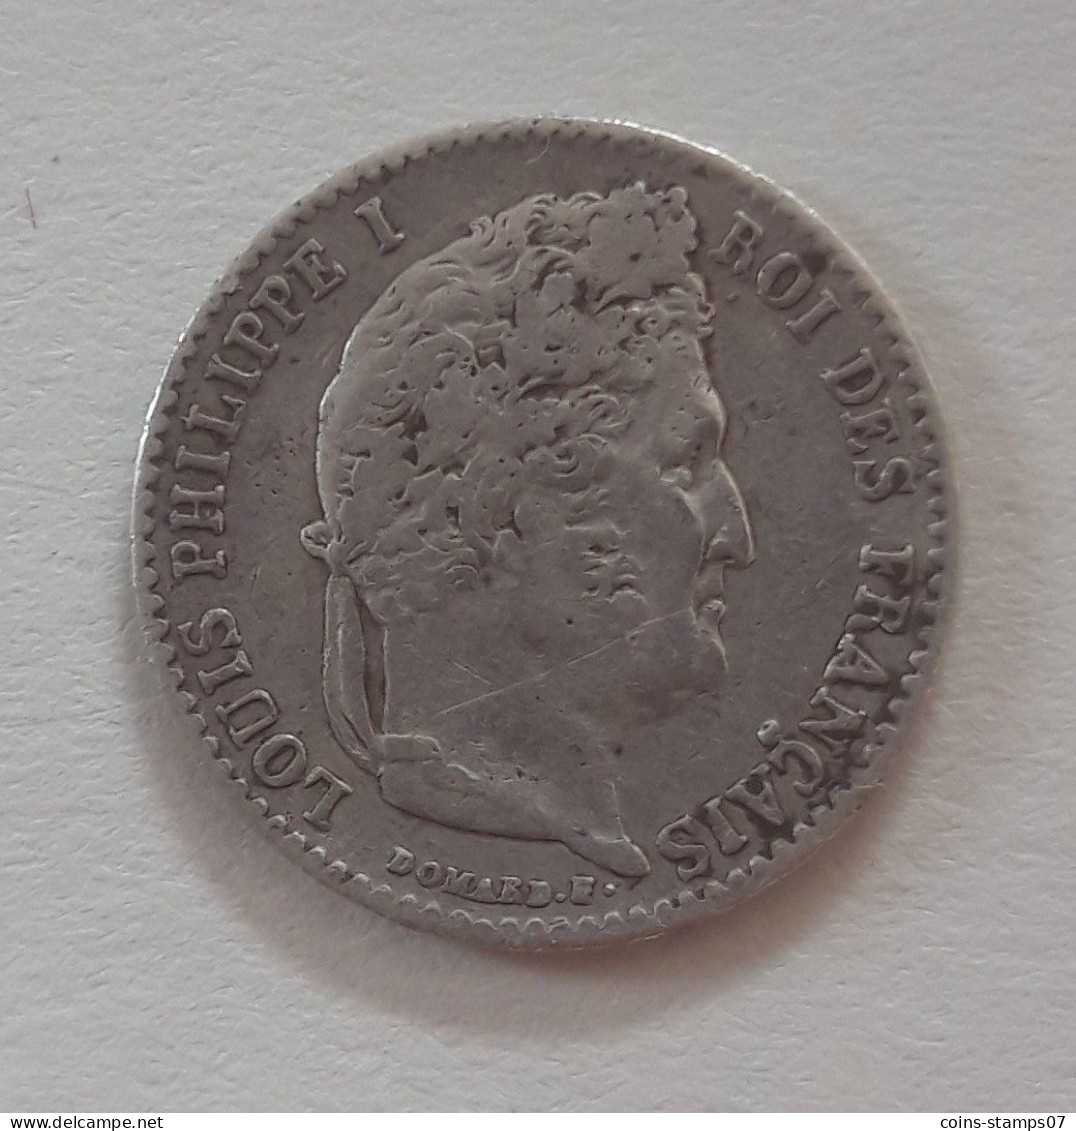 France - 1/4 Franc Louis Philippe 1833 A - Paris - 1/4 Franc